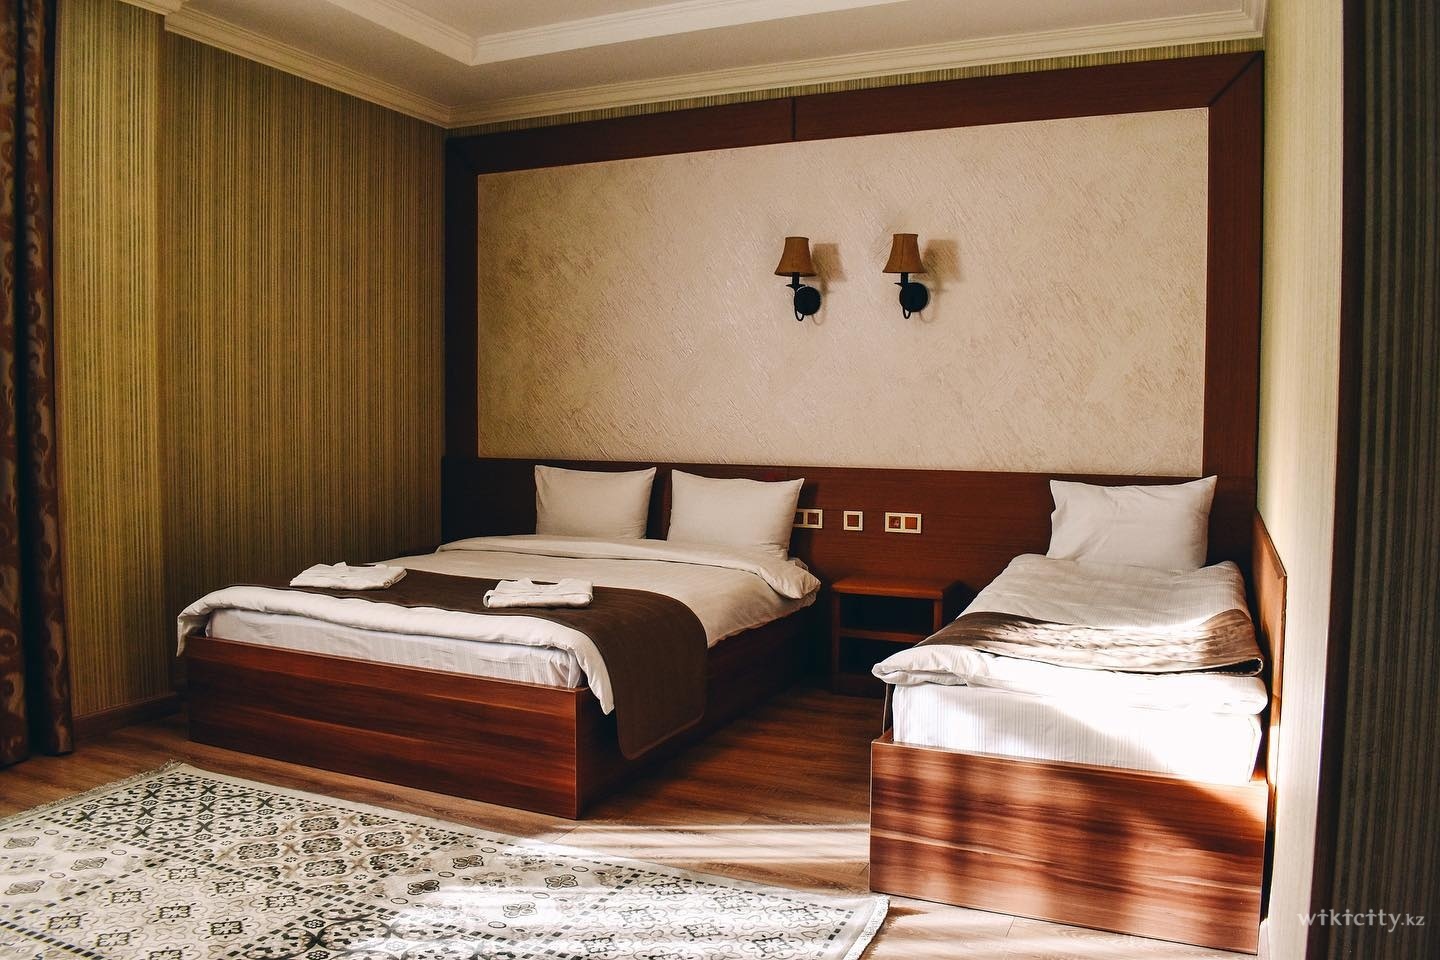 Фото Sacvoyage Hotel & Soul SPA - Almaty. Двухместный номер